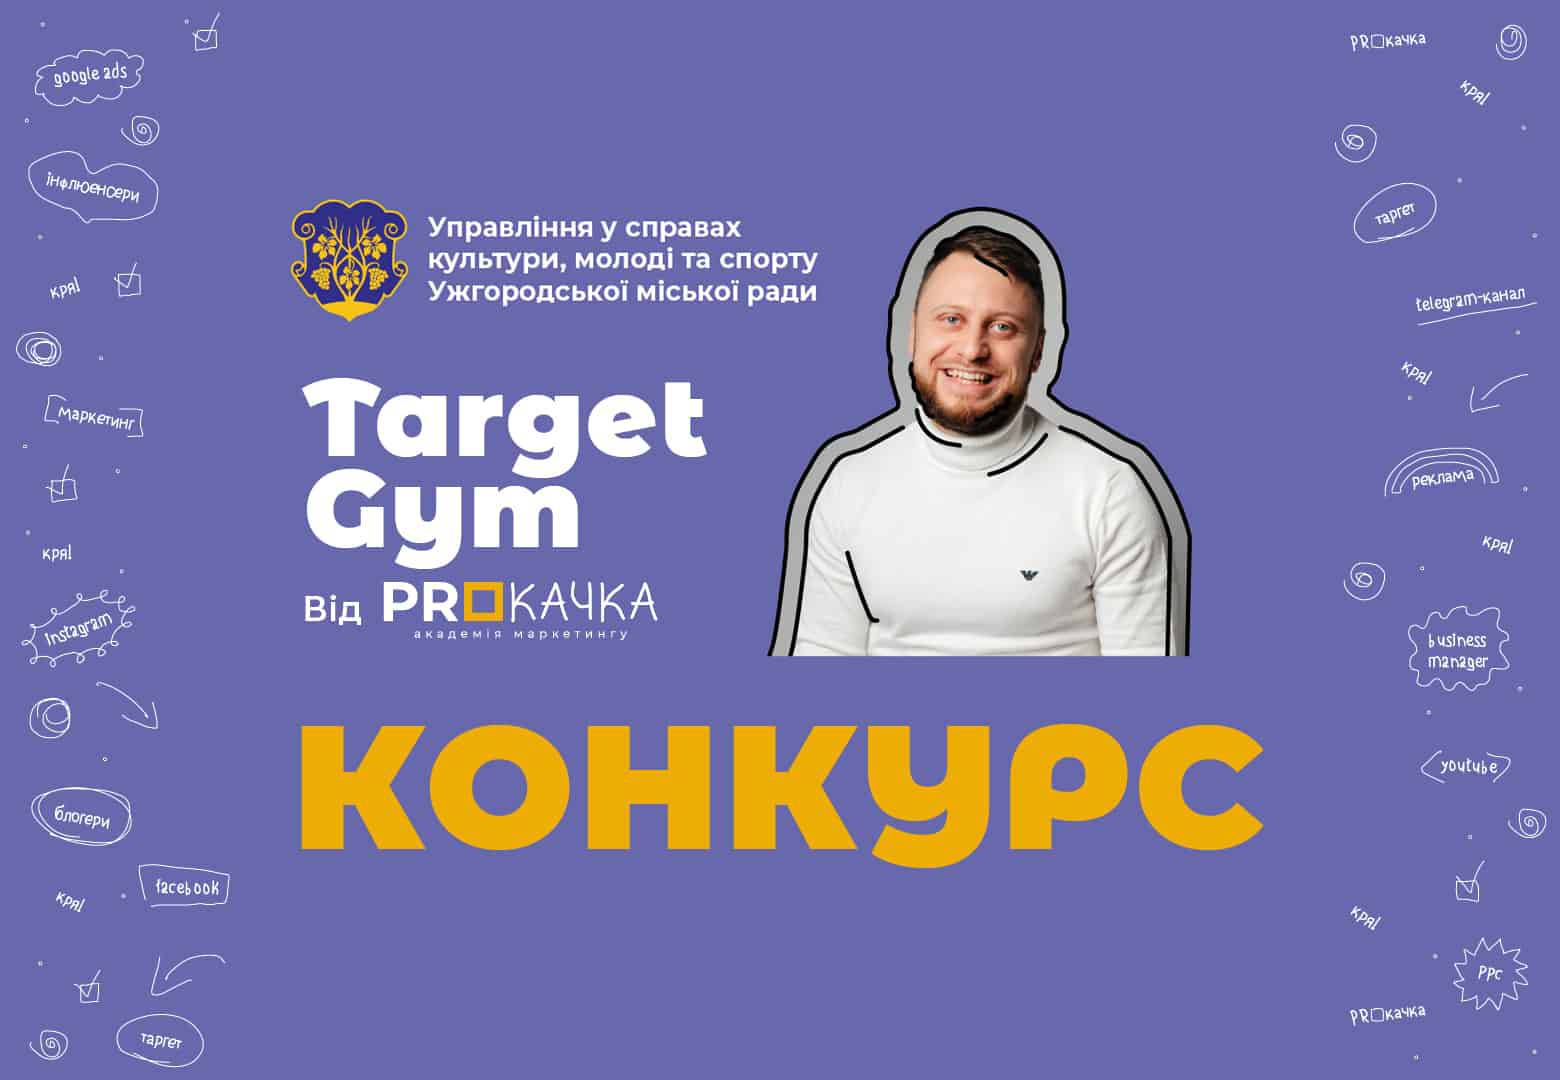 Управління у справах культури, молоді та спорту Ужгородської міської ради оголошує конкурс для креативної молоді міста